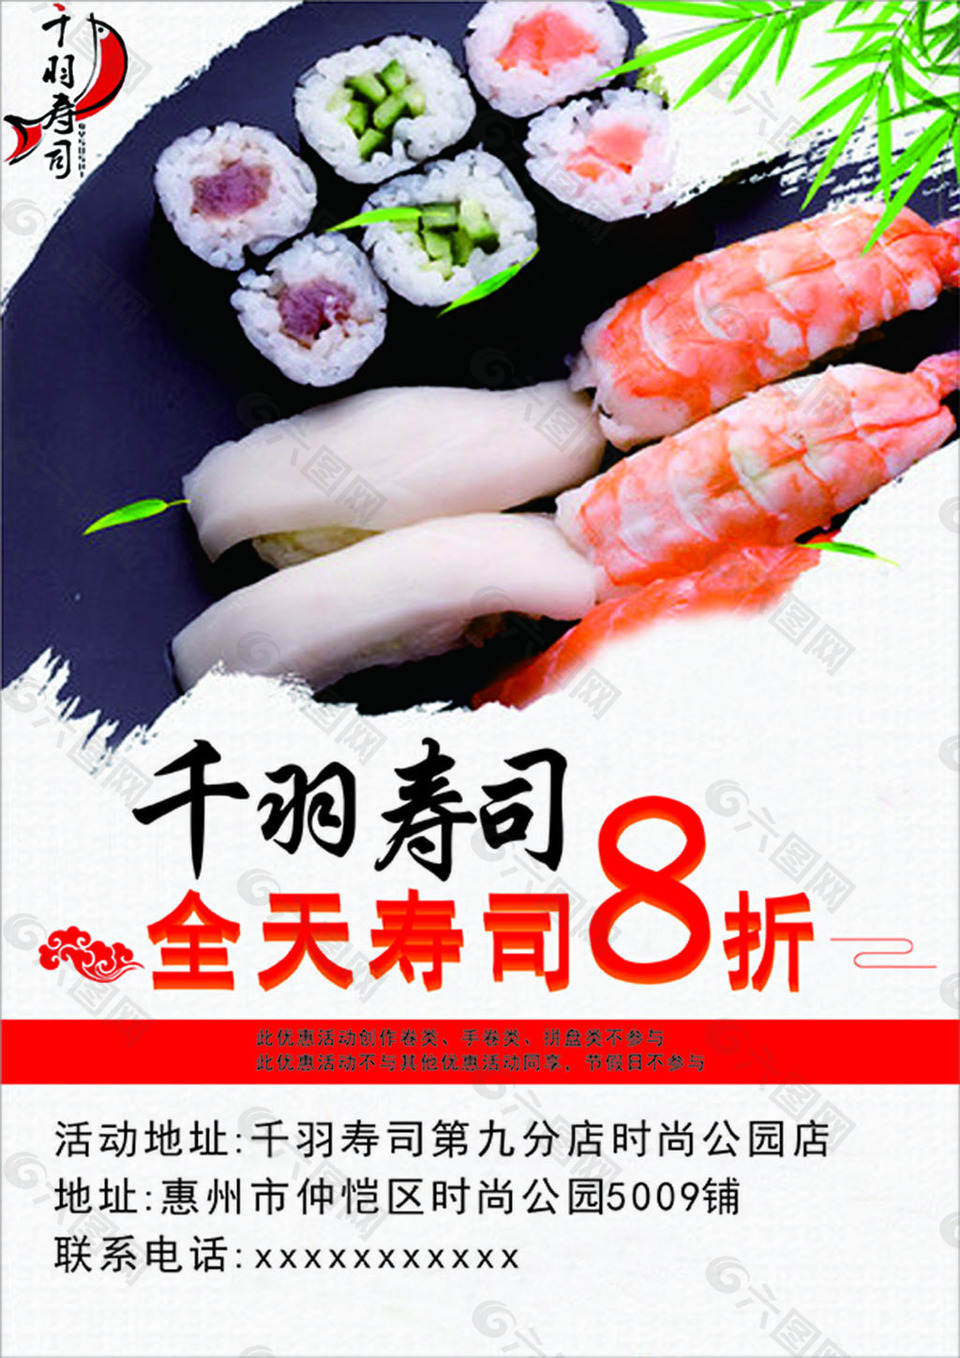 寿司宣传单图片 寿司宣传单素材 寿司宣传单模板免费下载 六图网